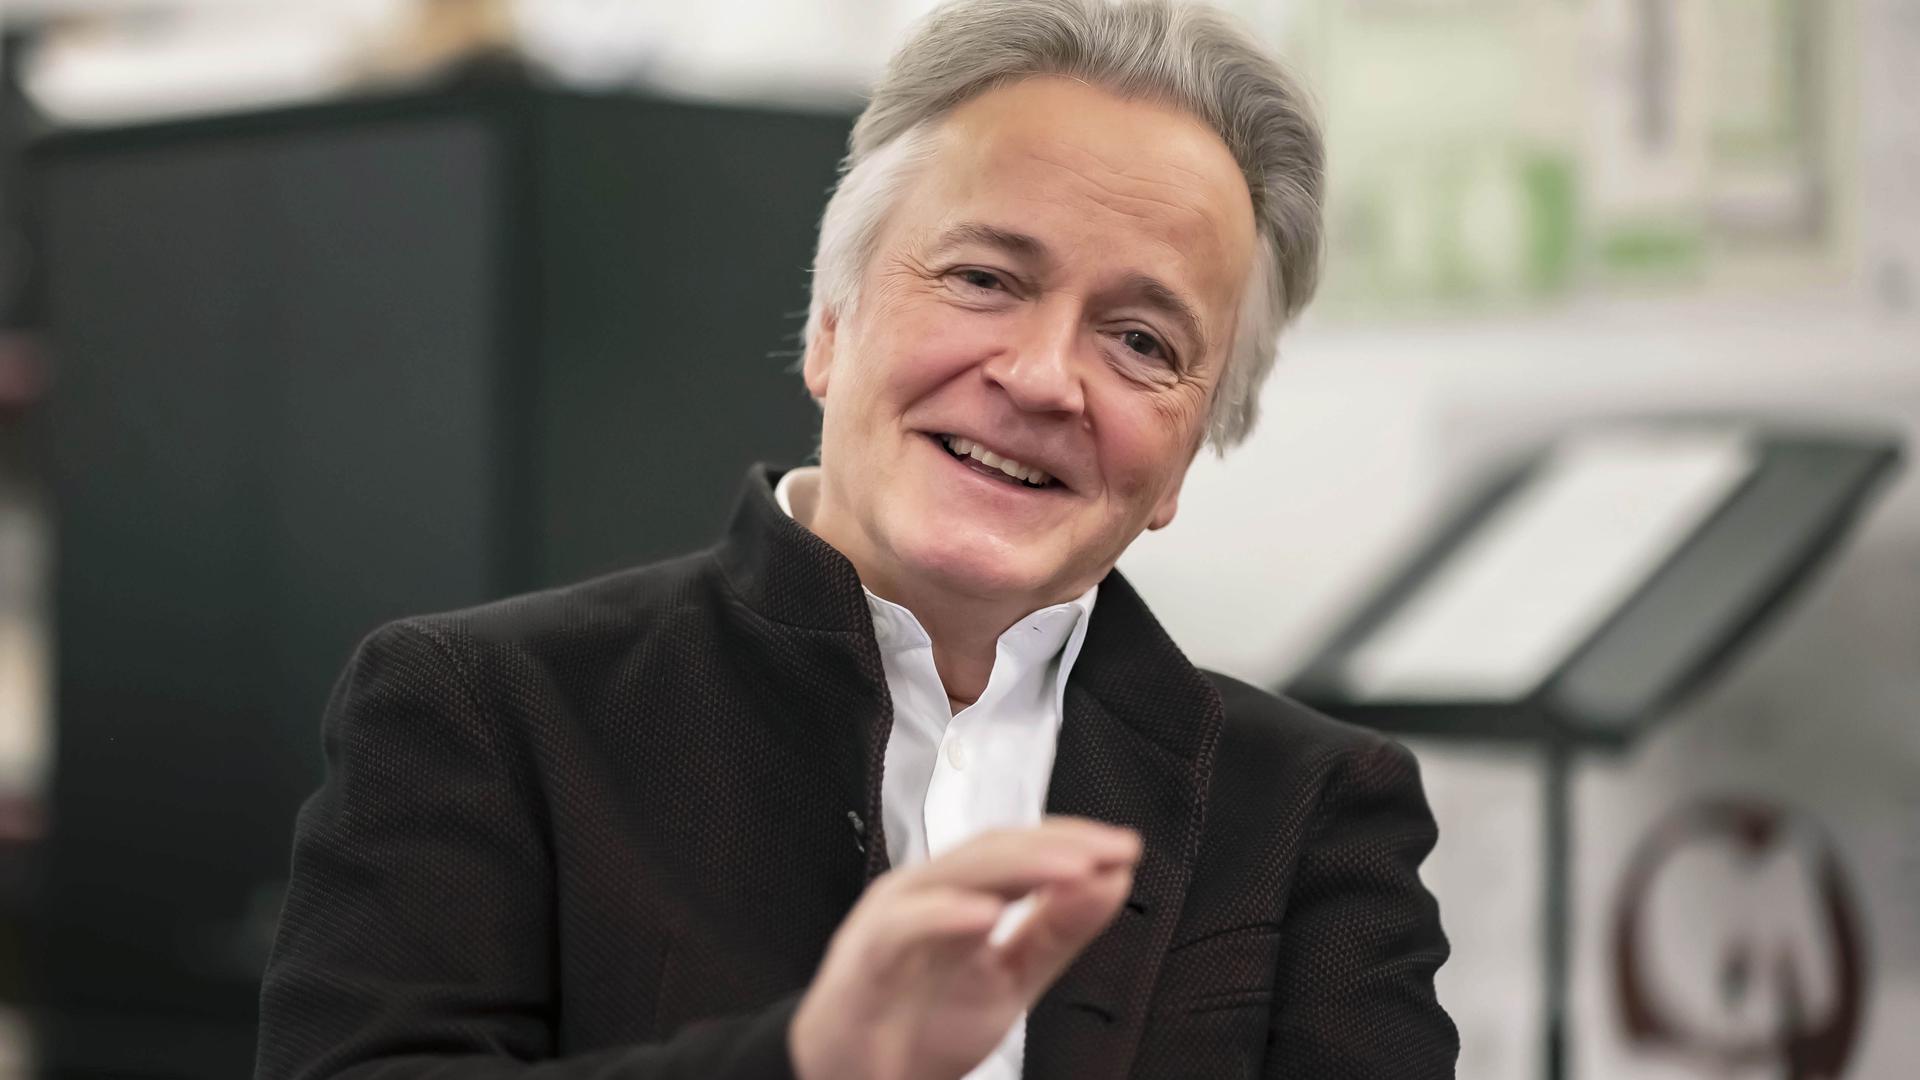 Der Rektor der Musikhochschule Karlsruhe lächelt in die Kamera und hebt dabei leicht die Hand